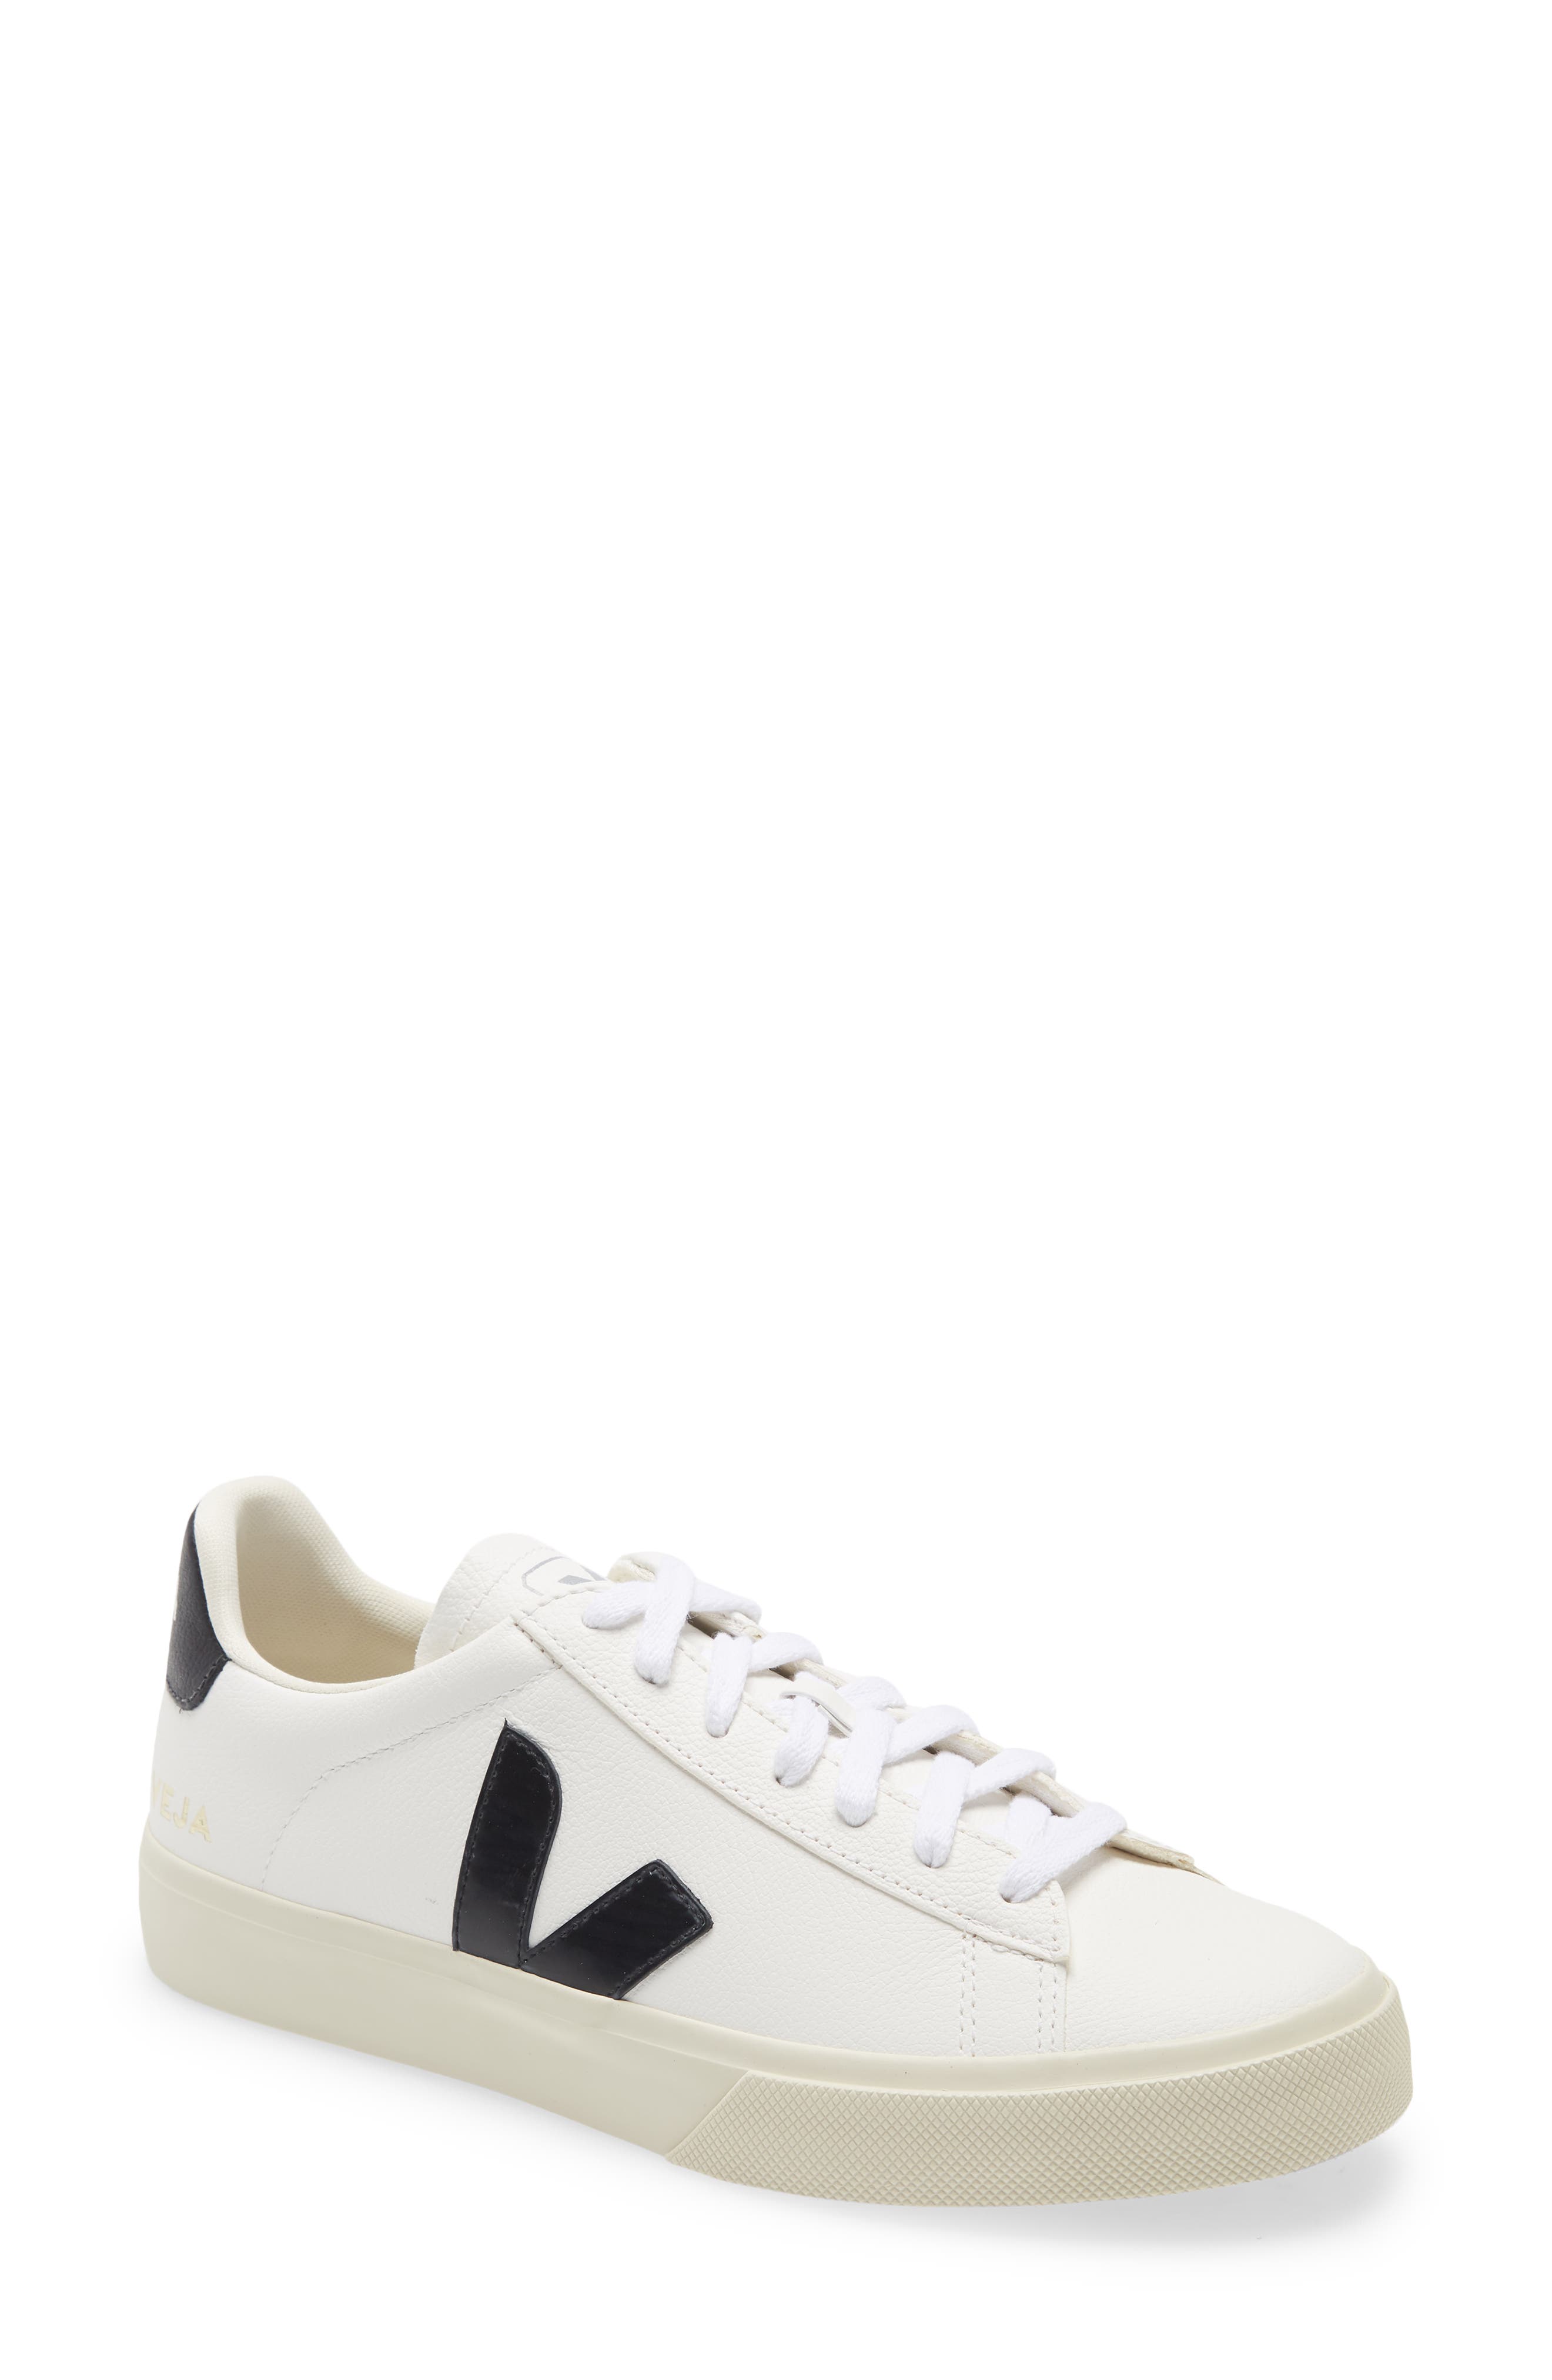 Veja Campo Sneaker in Extra-White/Black at Nordstrom, Size 37Eu